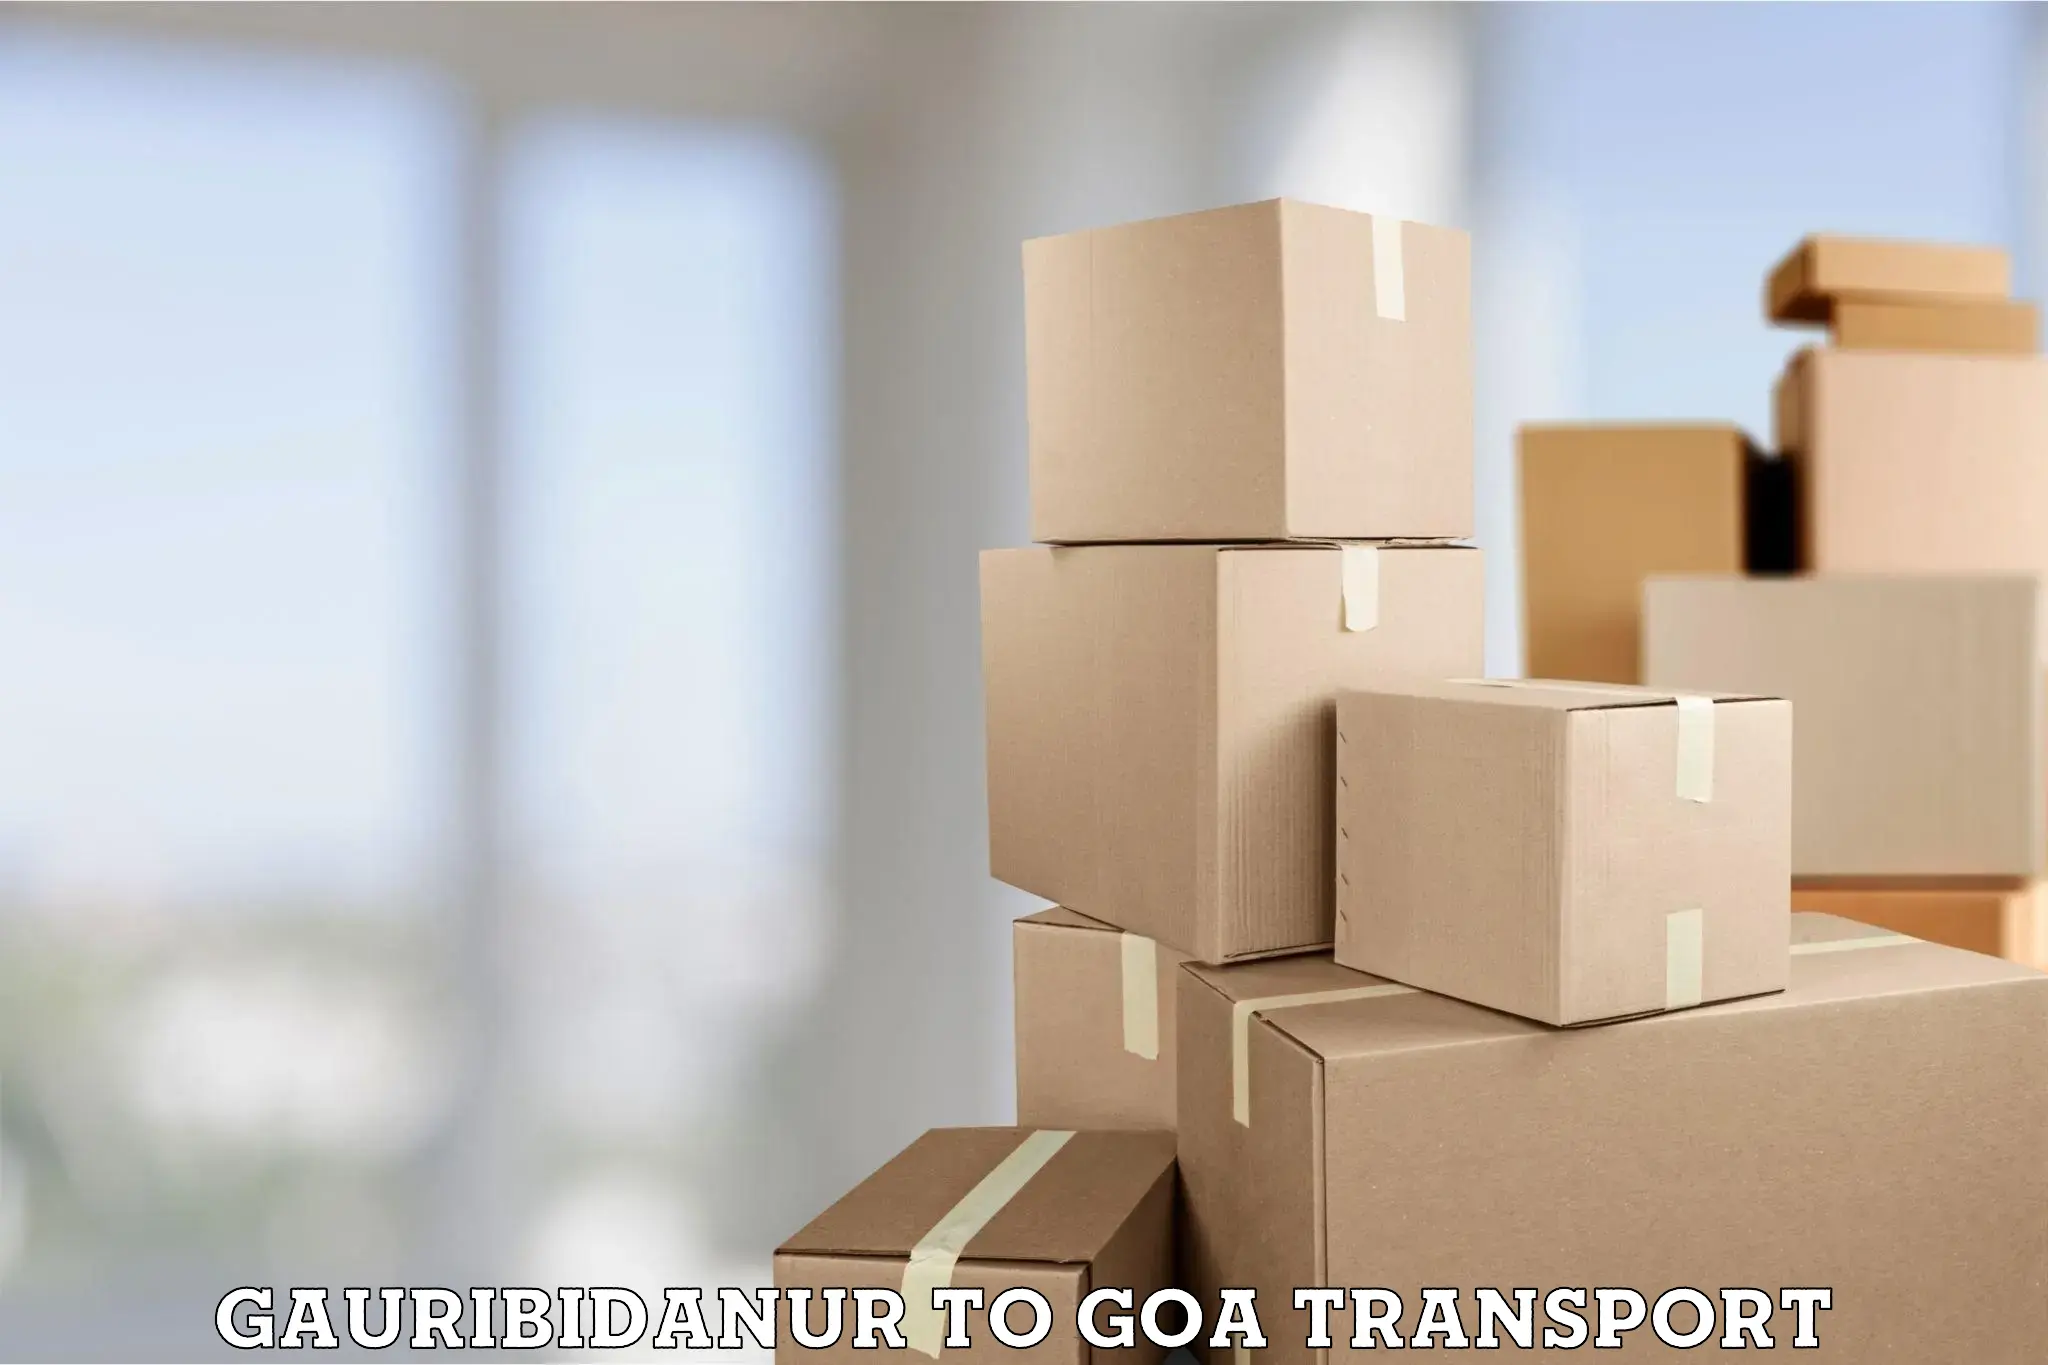 Online transport service Gauribidanur to Goa